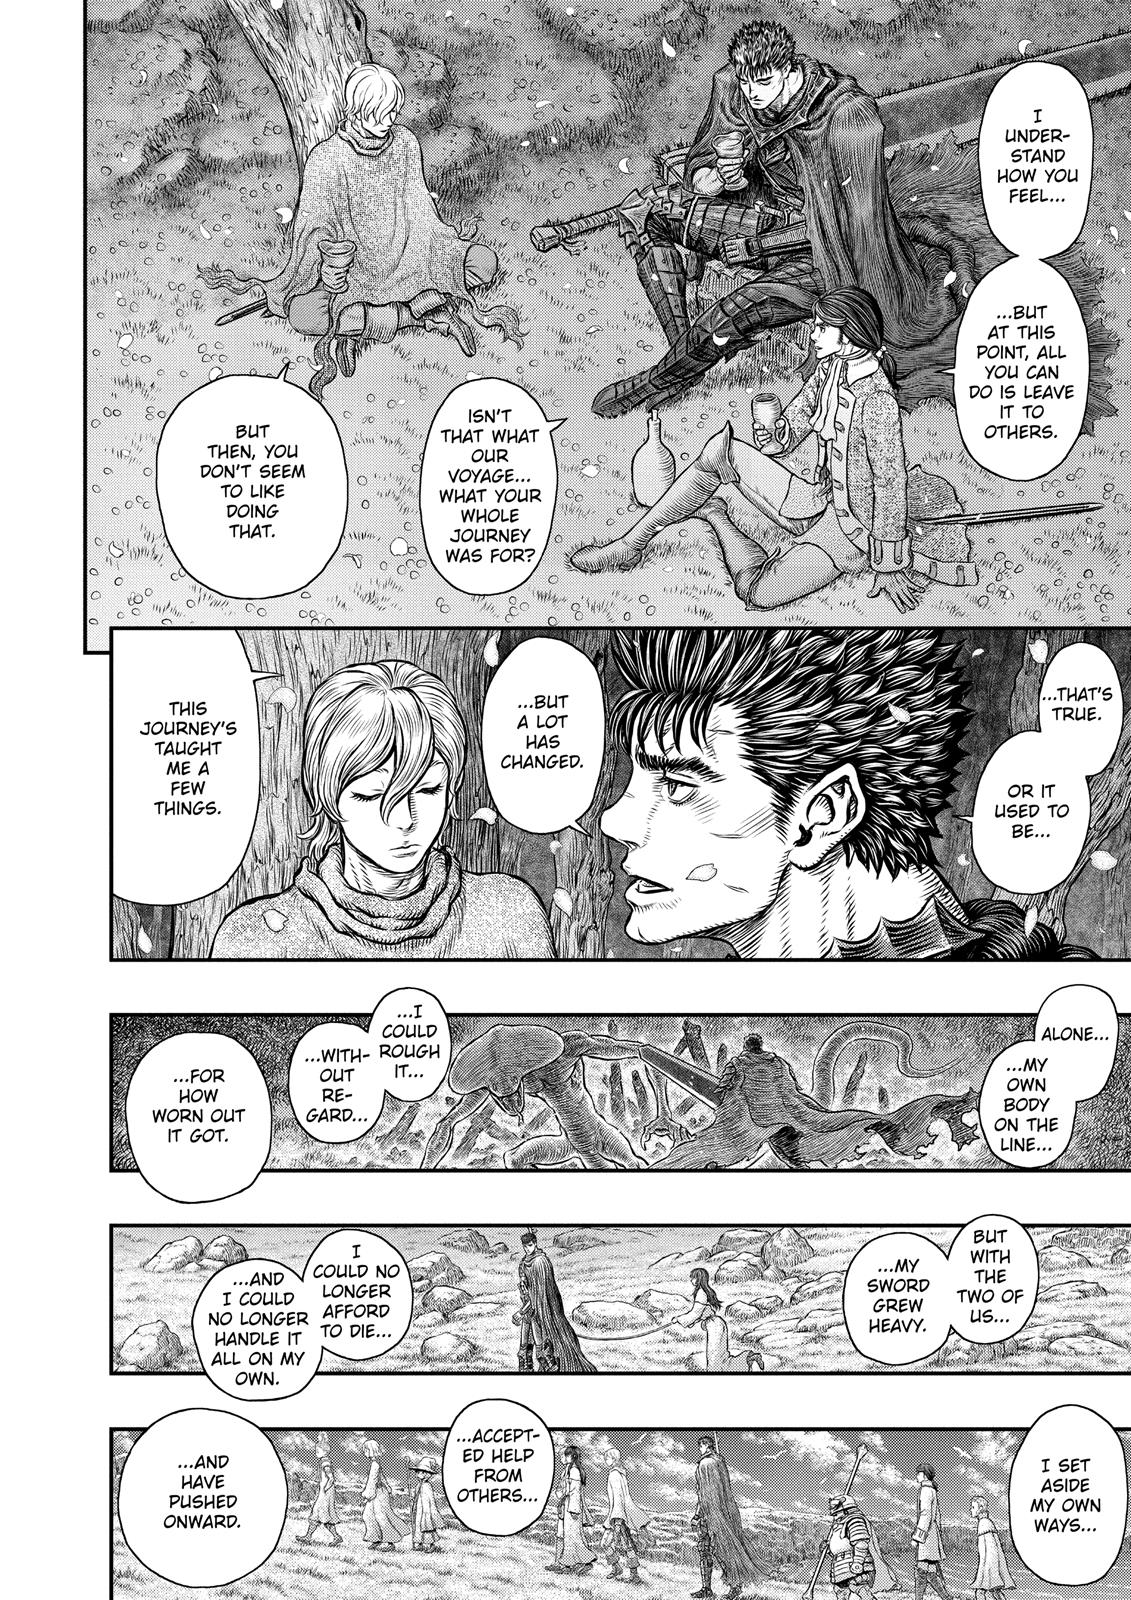 Berserk Manga Chapter 349 image 05